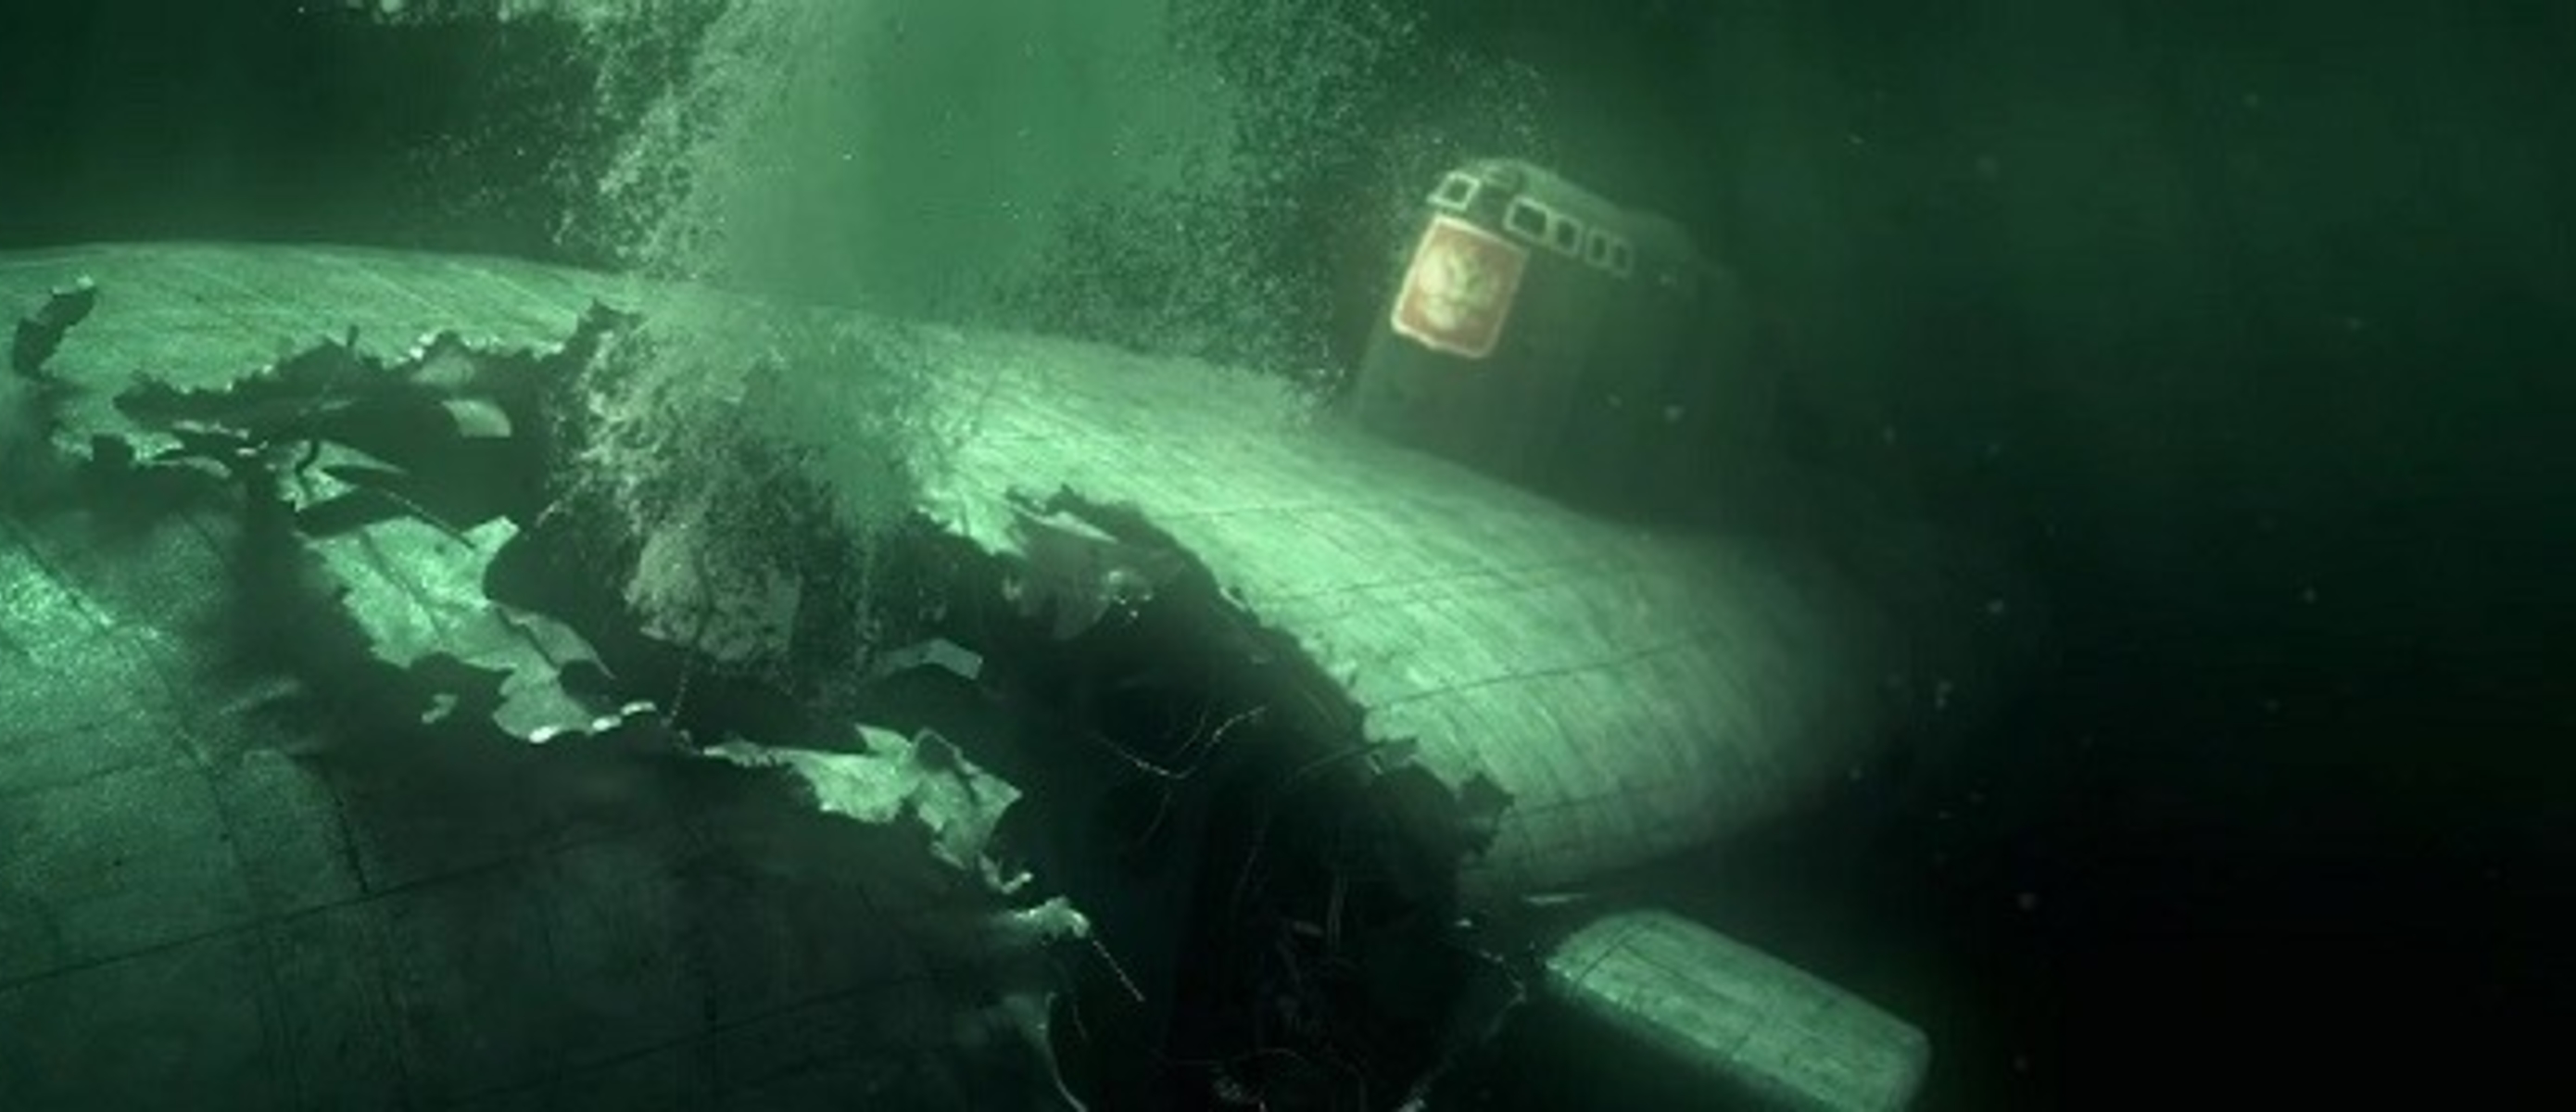 Курск субмарина в мутной воде. Подводная лодка к-141 «Курск». Курск подводная лодка катастрофа. Курск 141 атомная подводная лодка. К-141 «Курск».